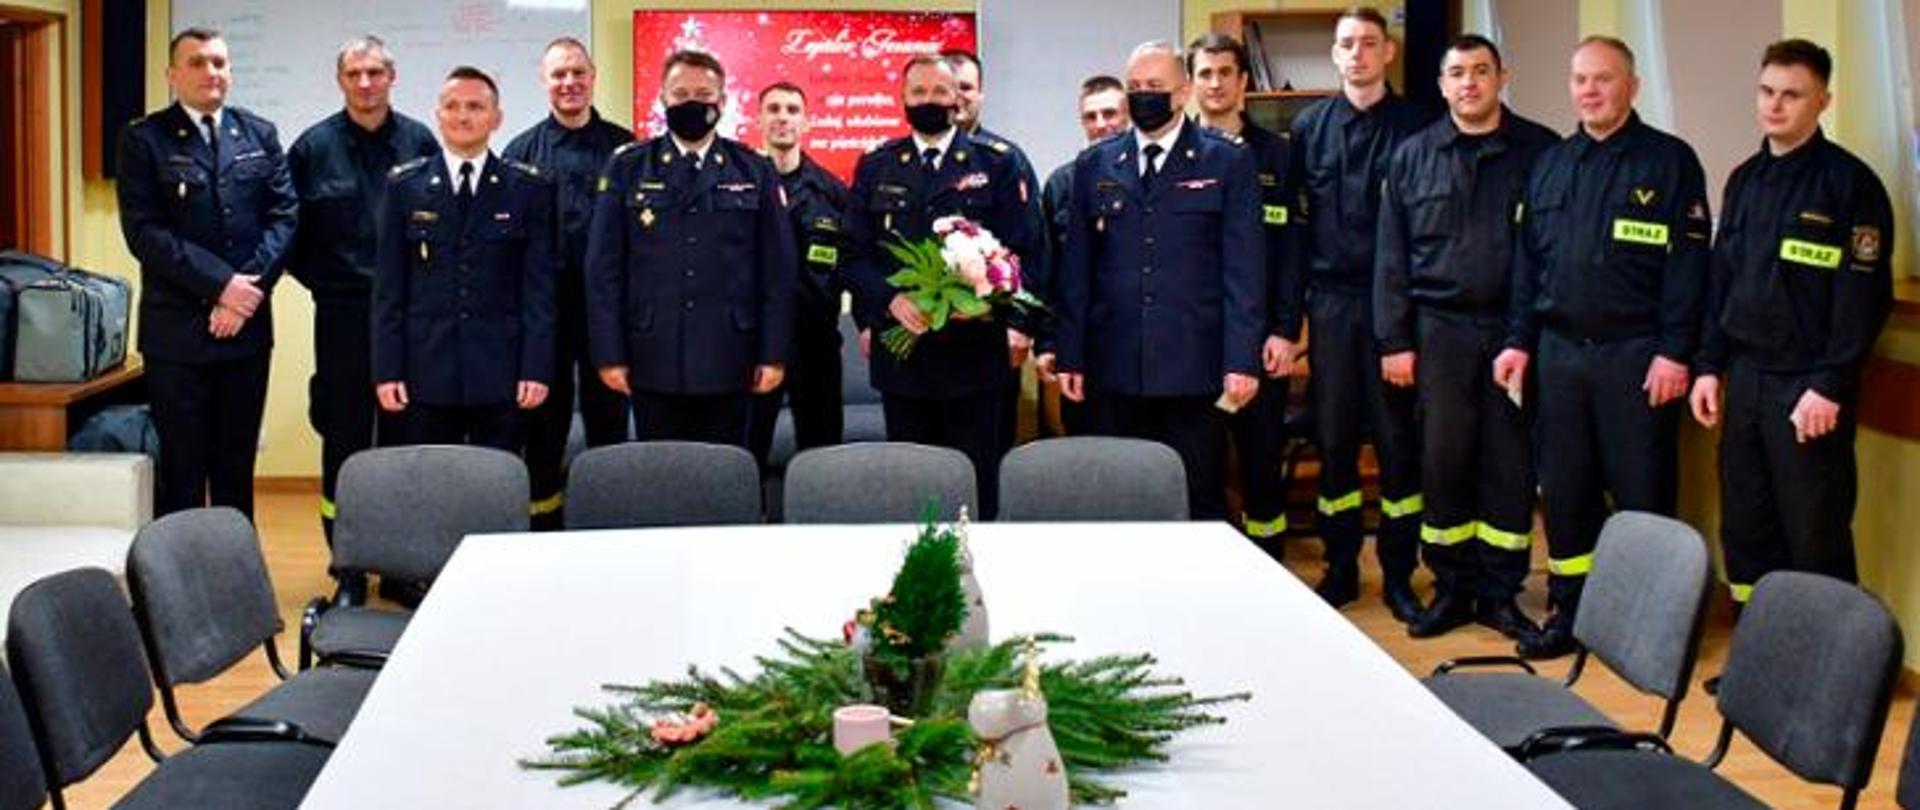 Spotkanie warszawskich strażaków z Komendantem Głównym PSP w JRG nr 9. Strażacy w umundurowaniu koszarowym przy białym stole, na którym jest wigilijny stroik. 